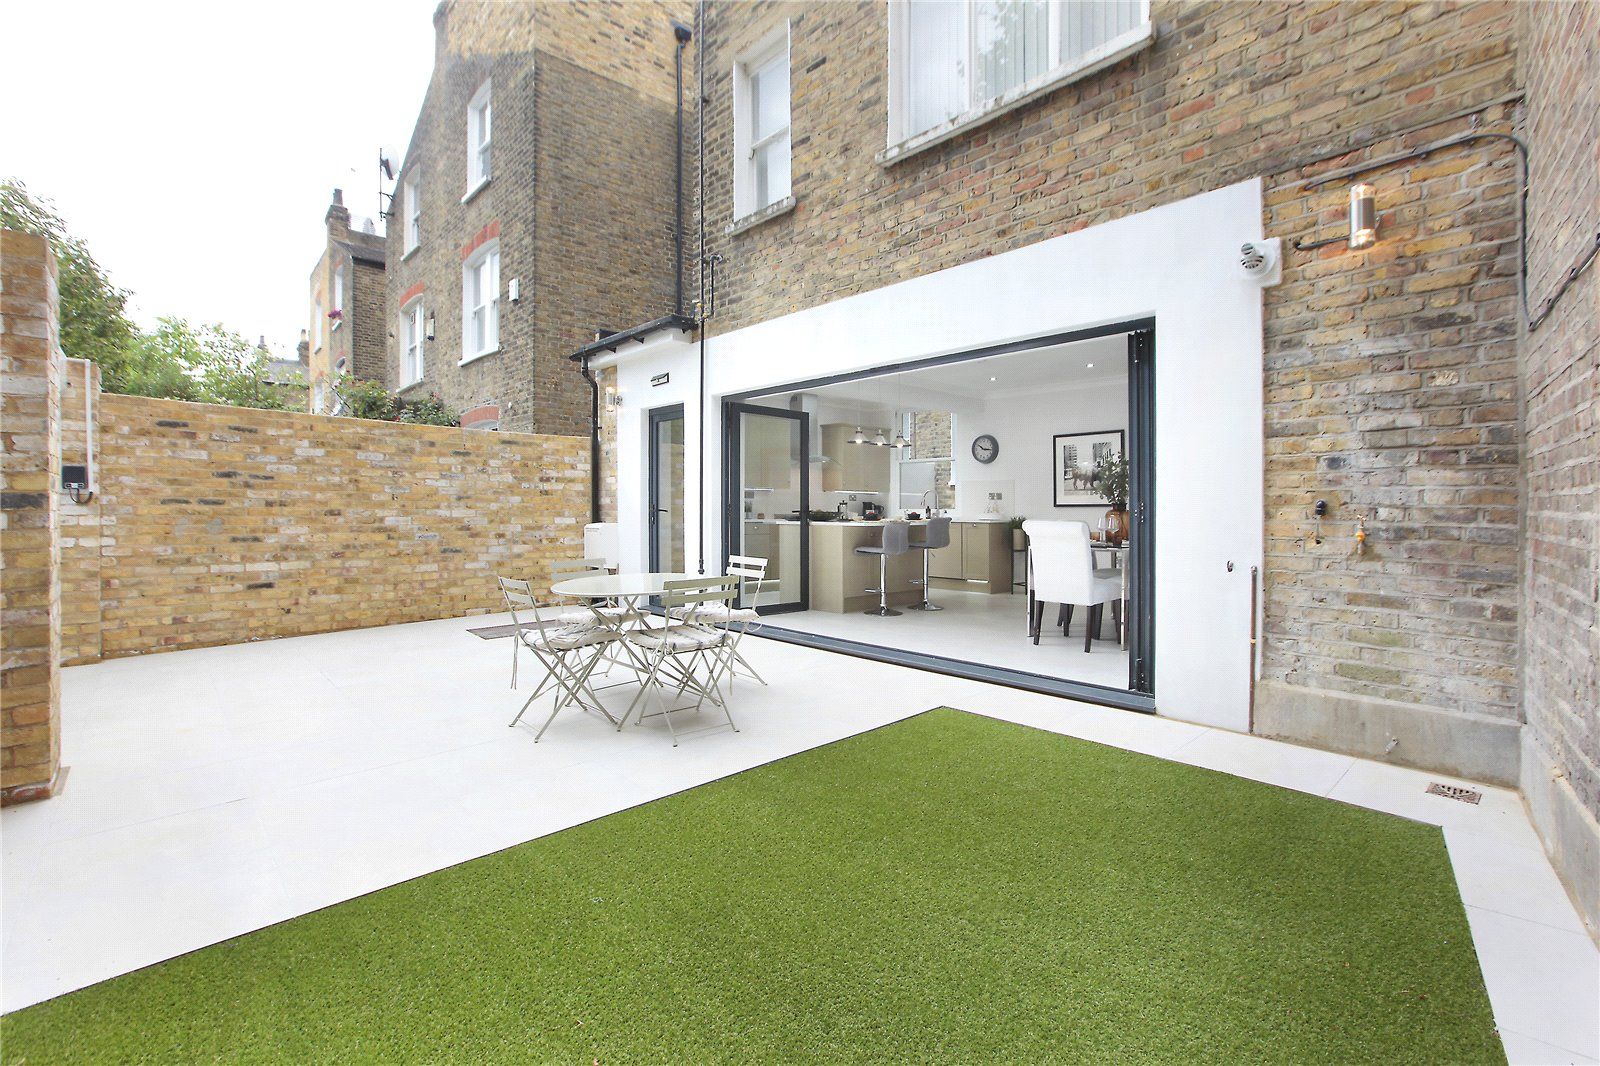 Kitchen extension Richmond London Design + Build Zen garden Bricks